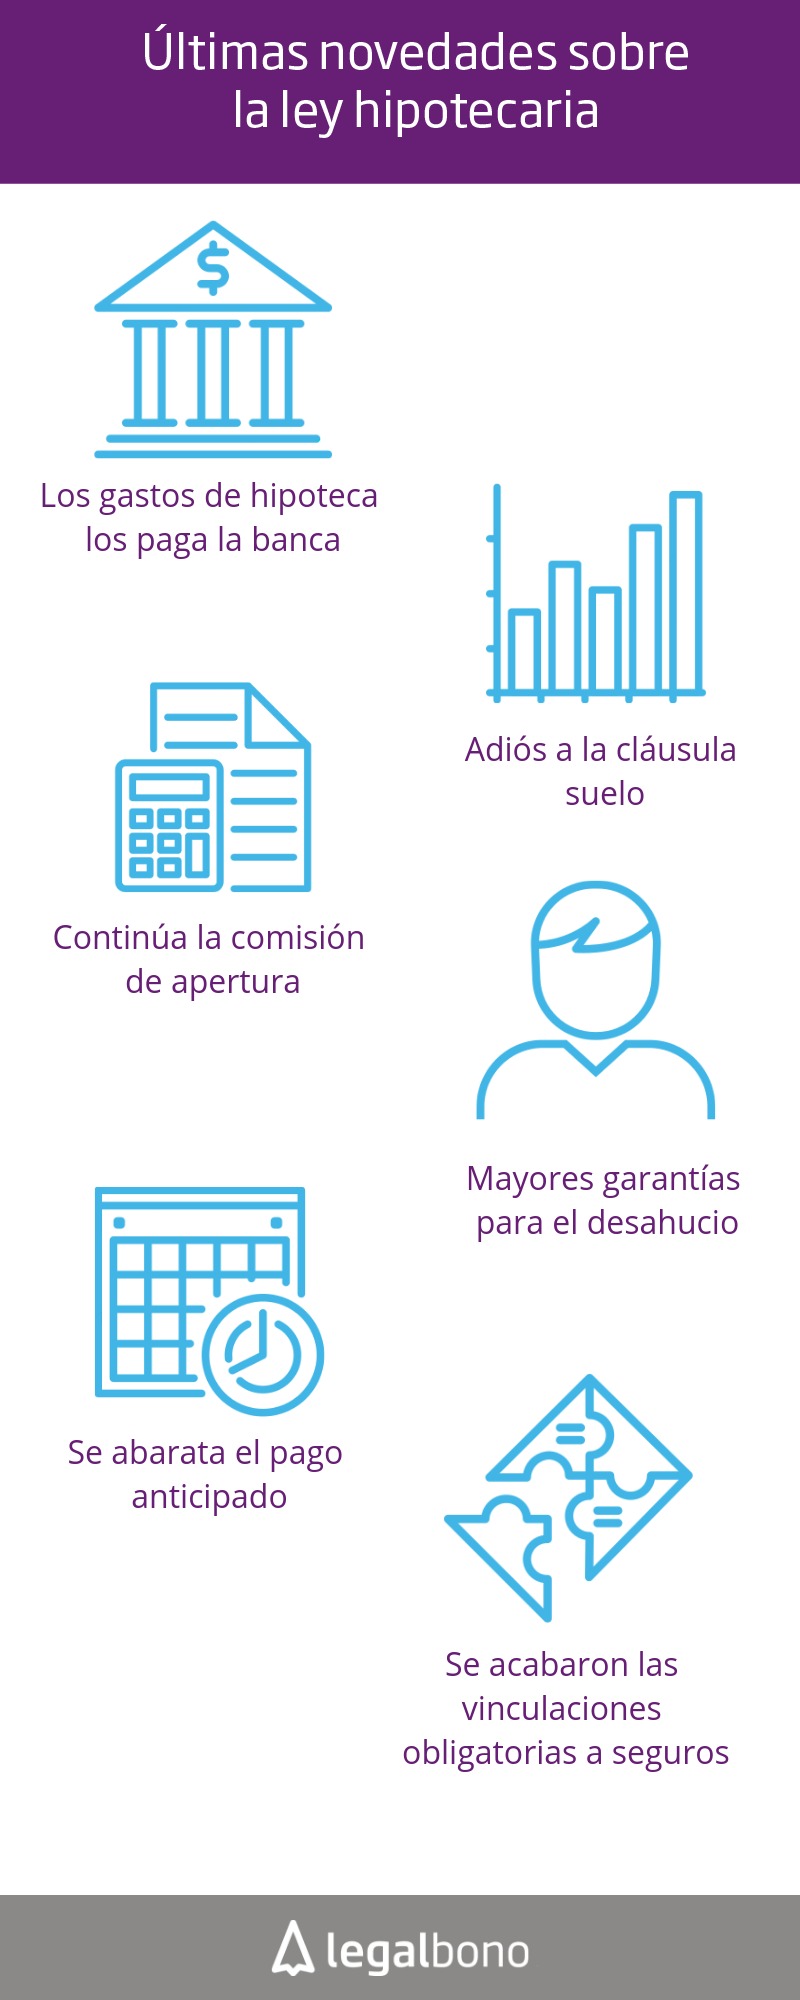 ¿Qué sabes de la ley hipotecaria en España? 19